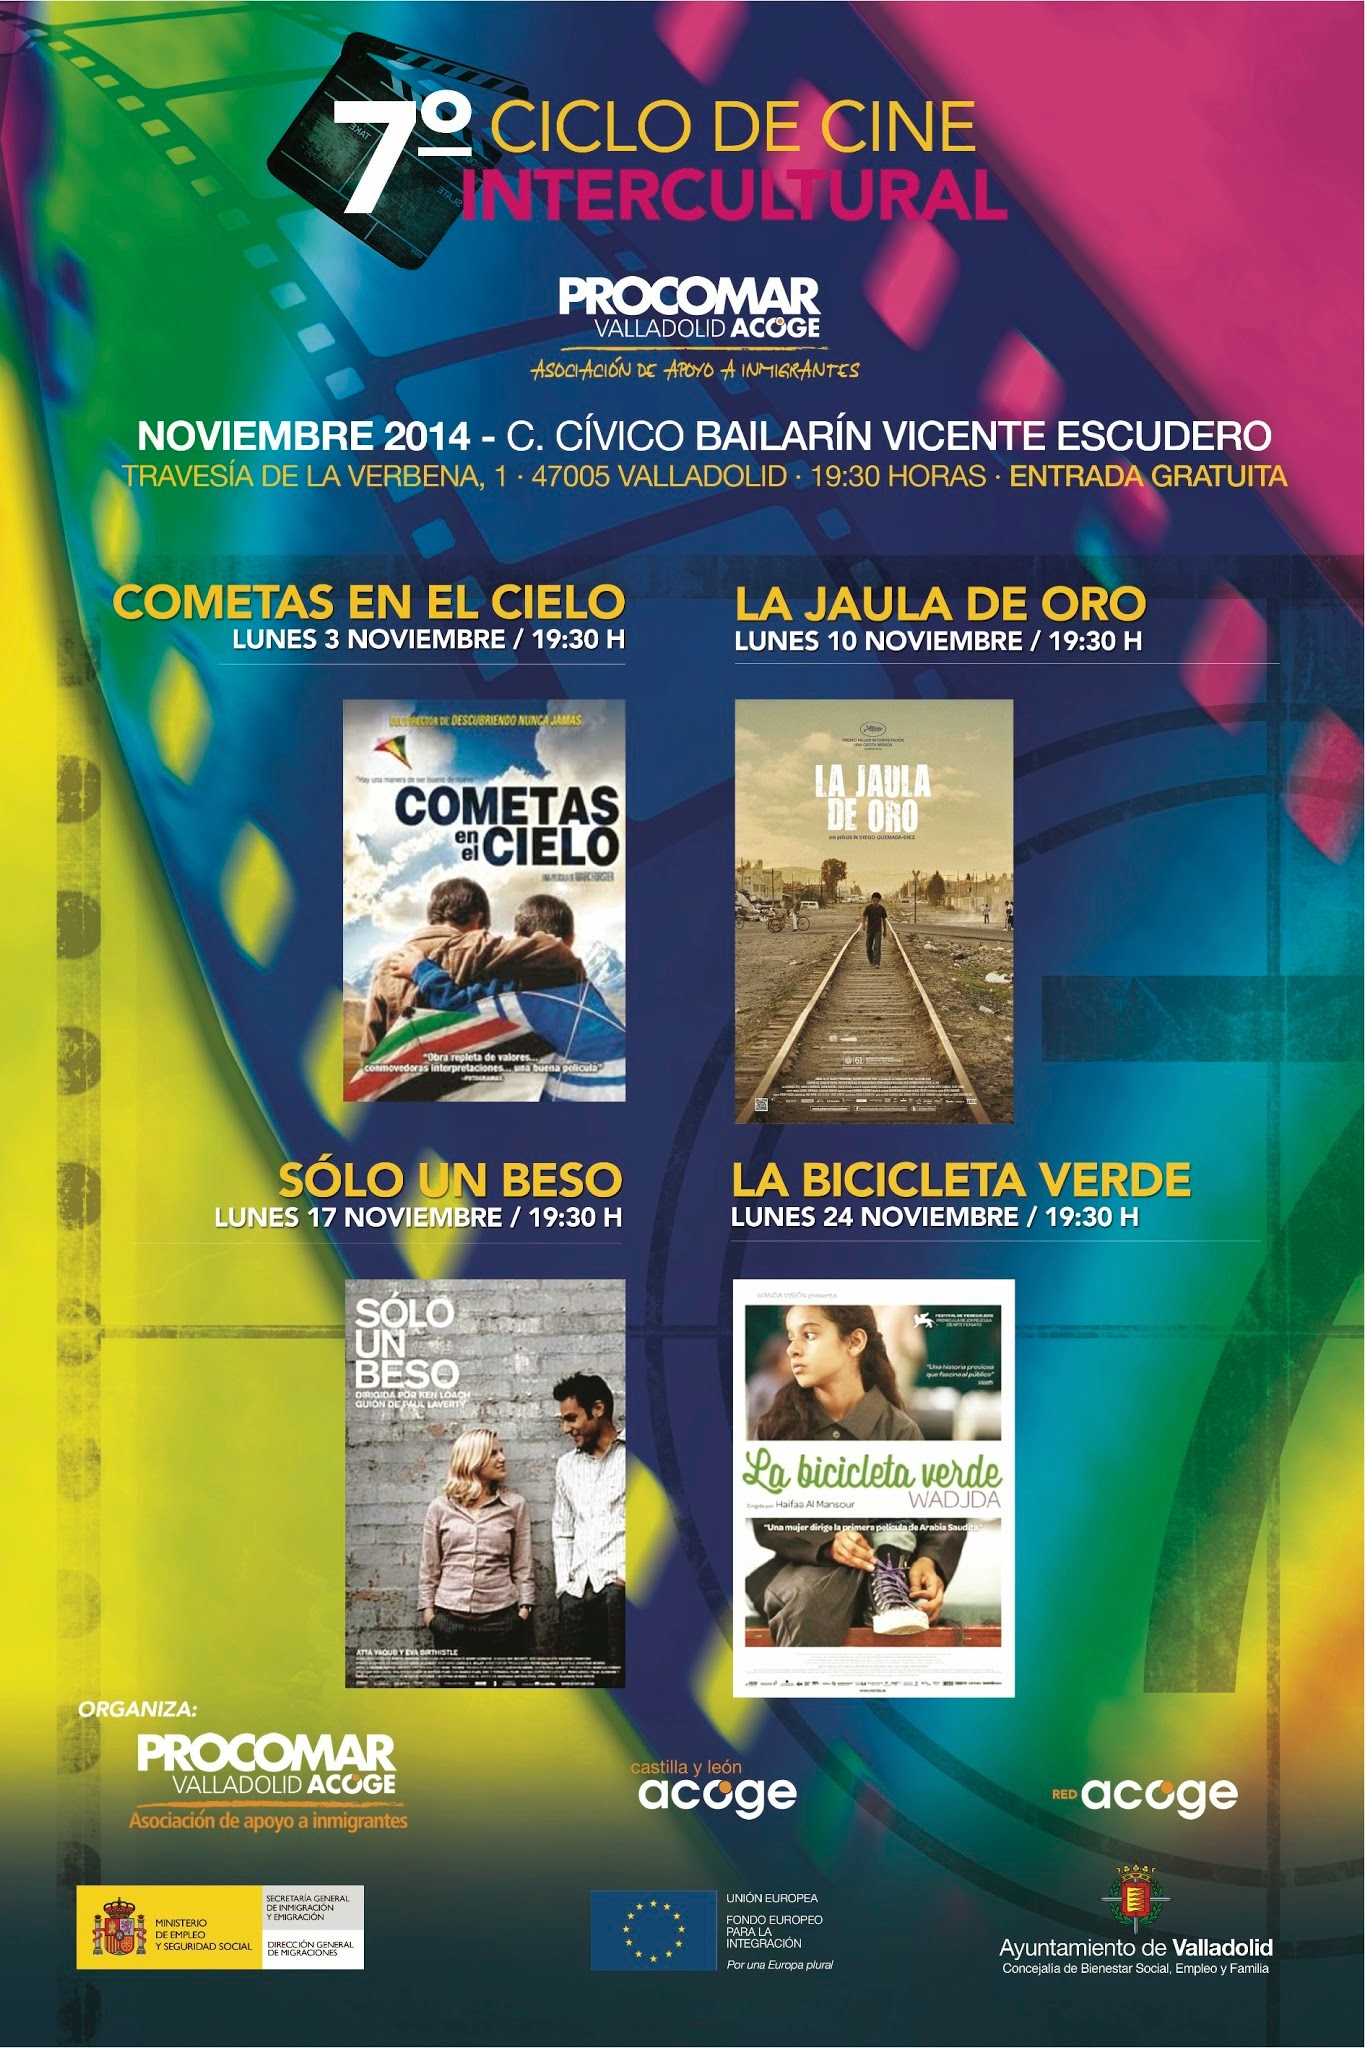 7º Ciclo de Cine Intercultural y Defensa de los Derechos Humanos